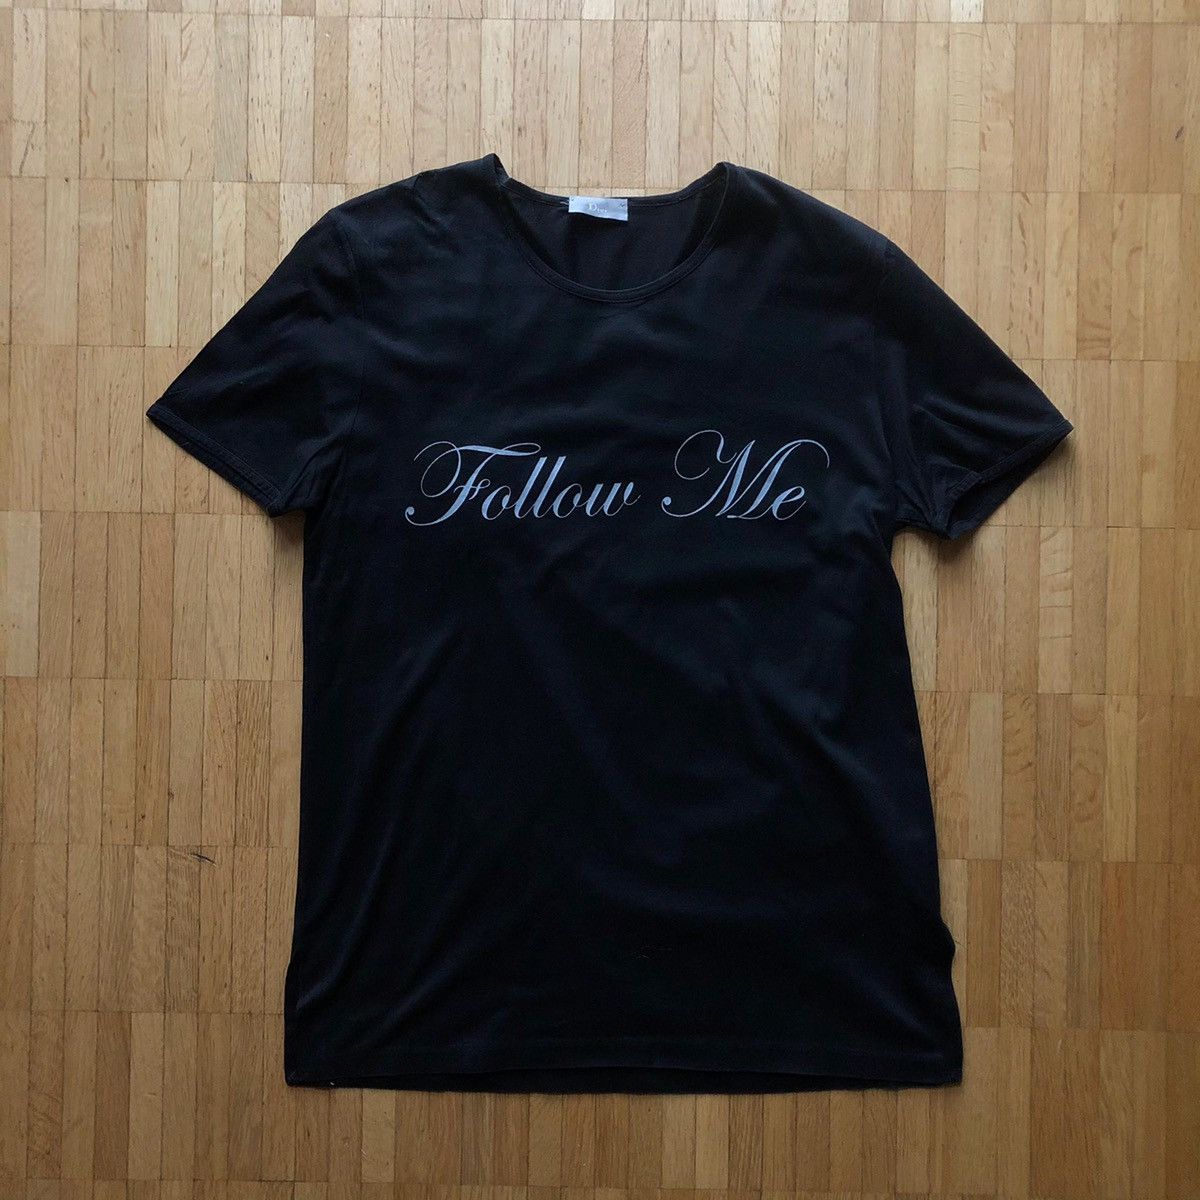 Dior Dior Homme SS03 “Follow Me” T-Shirt | Grailed